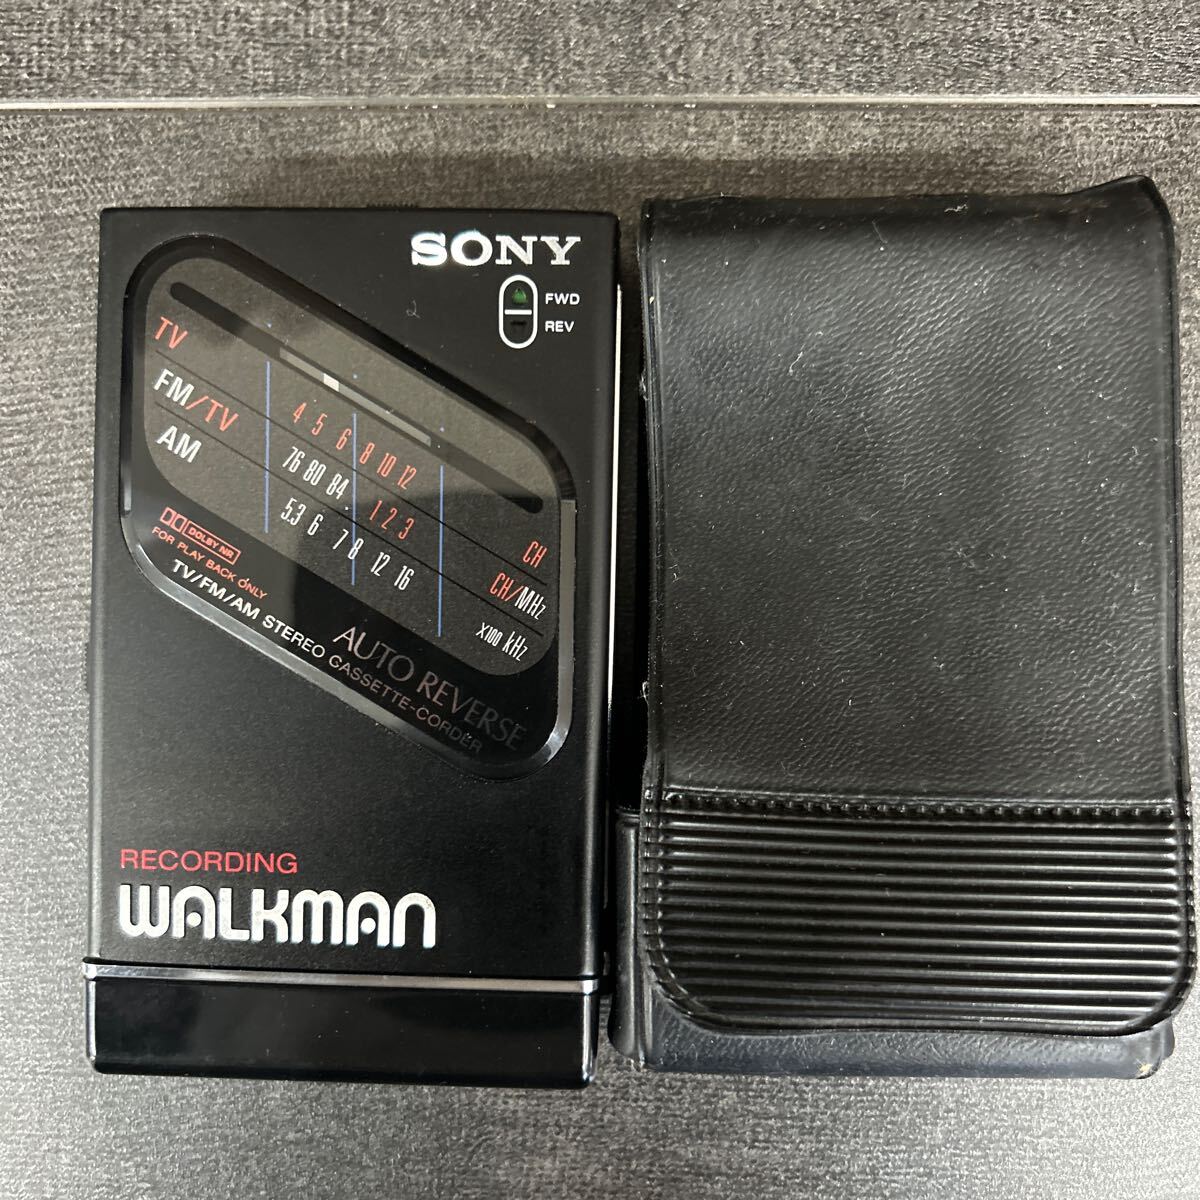 SONY ソニー ウォークマン カセットウォークマン WALKMAN RECORDING WALKMAN ラジカセ FM AM 黒 ブラック WM-F203 